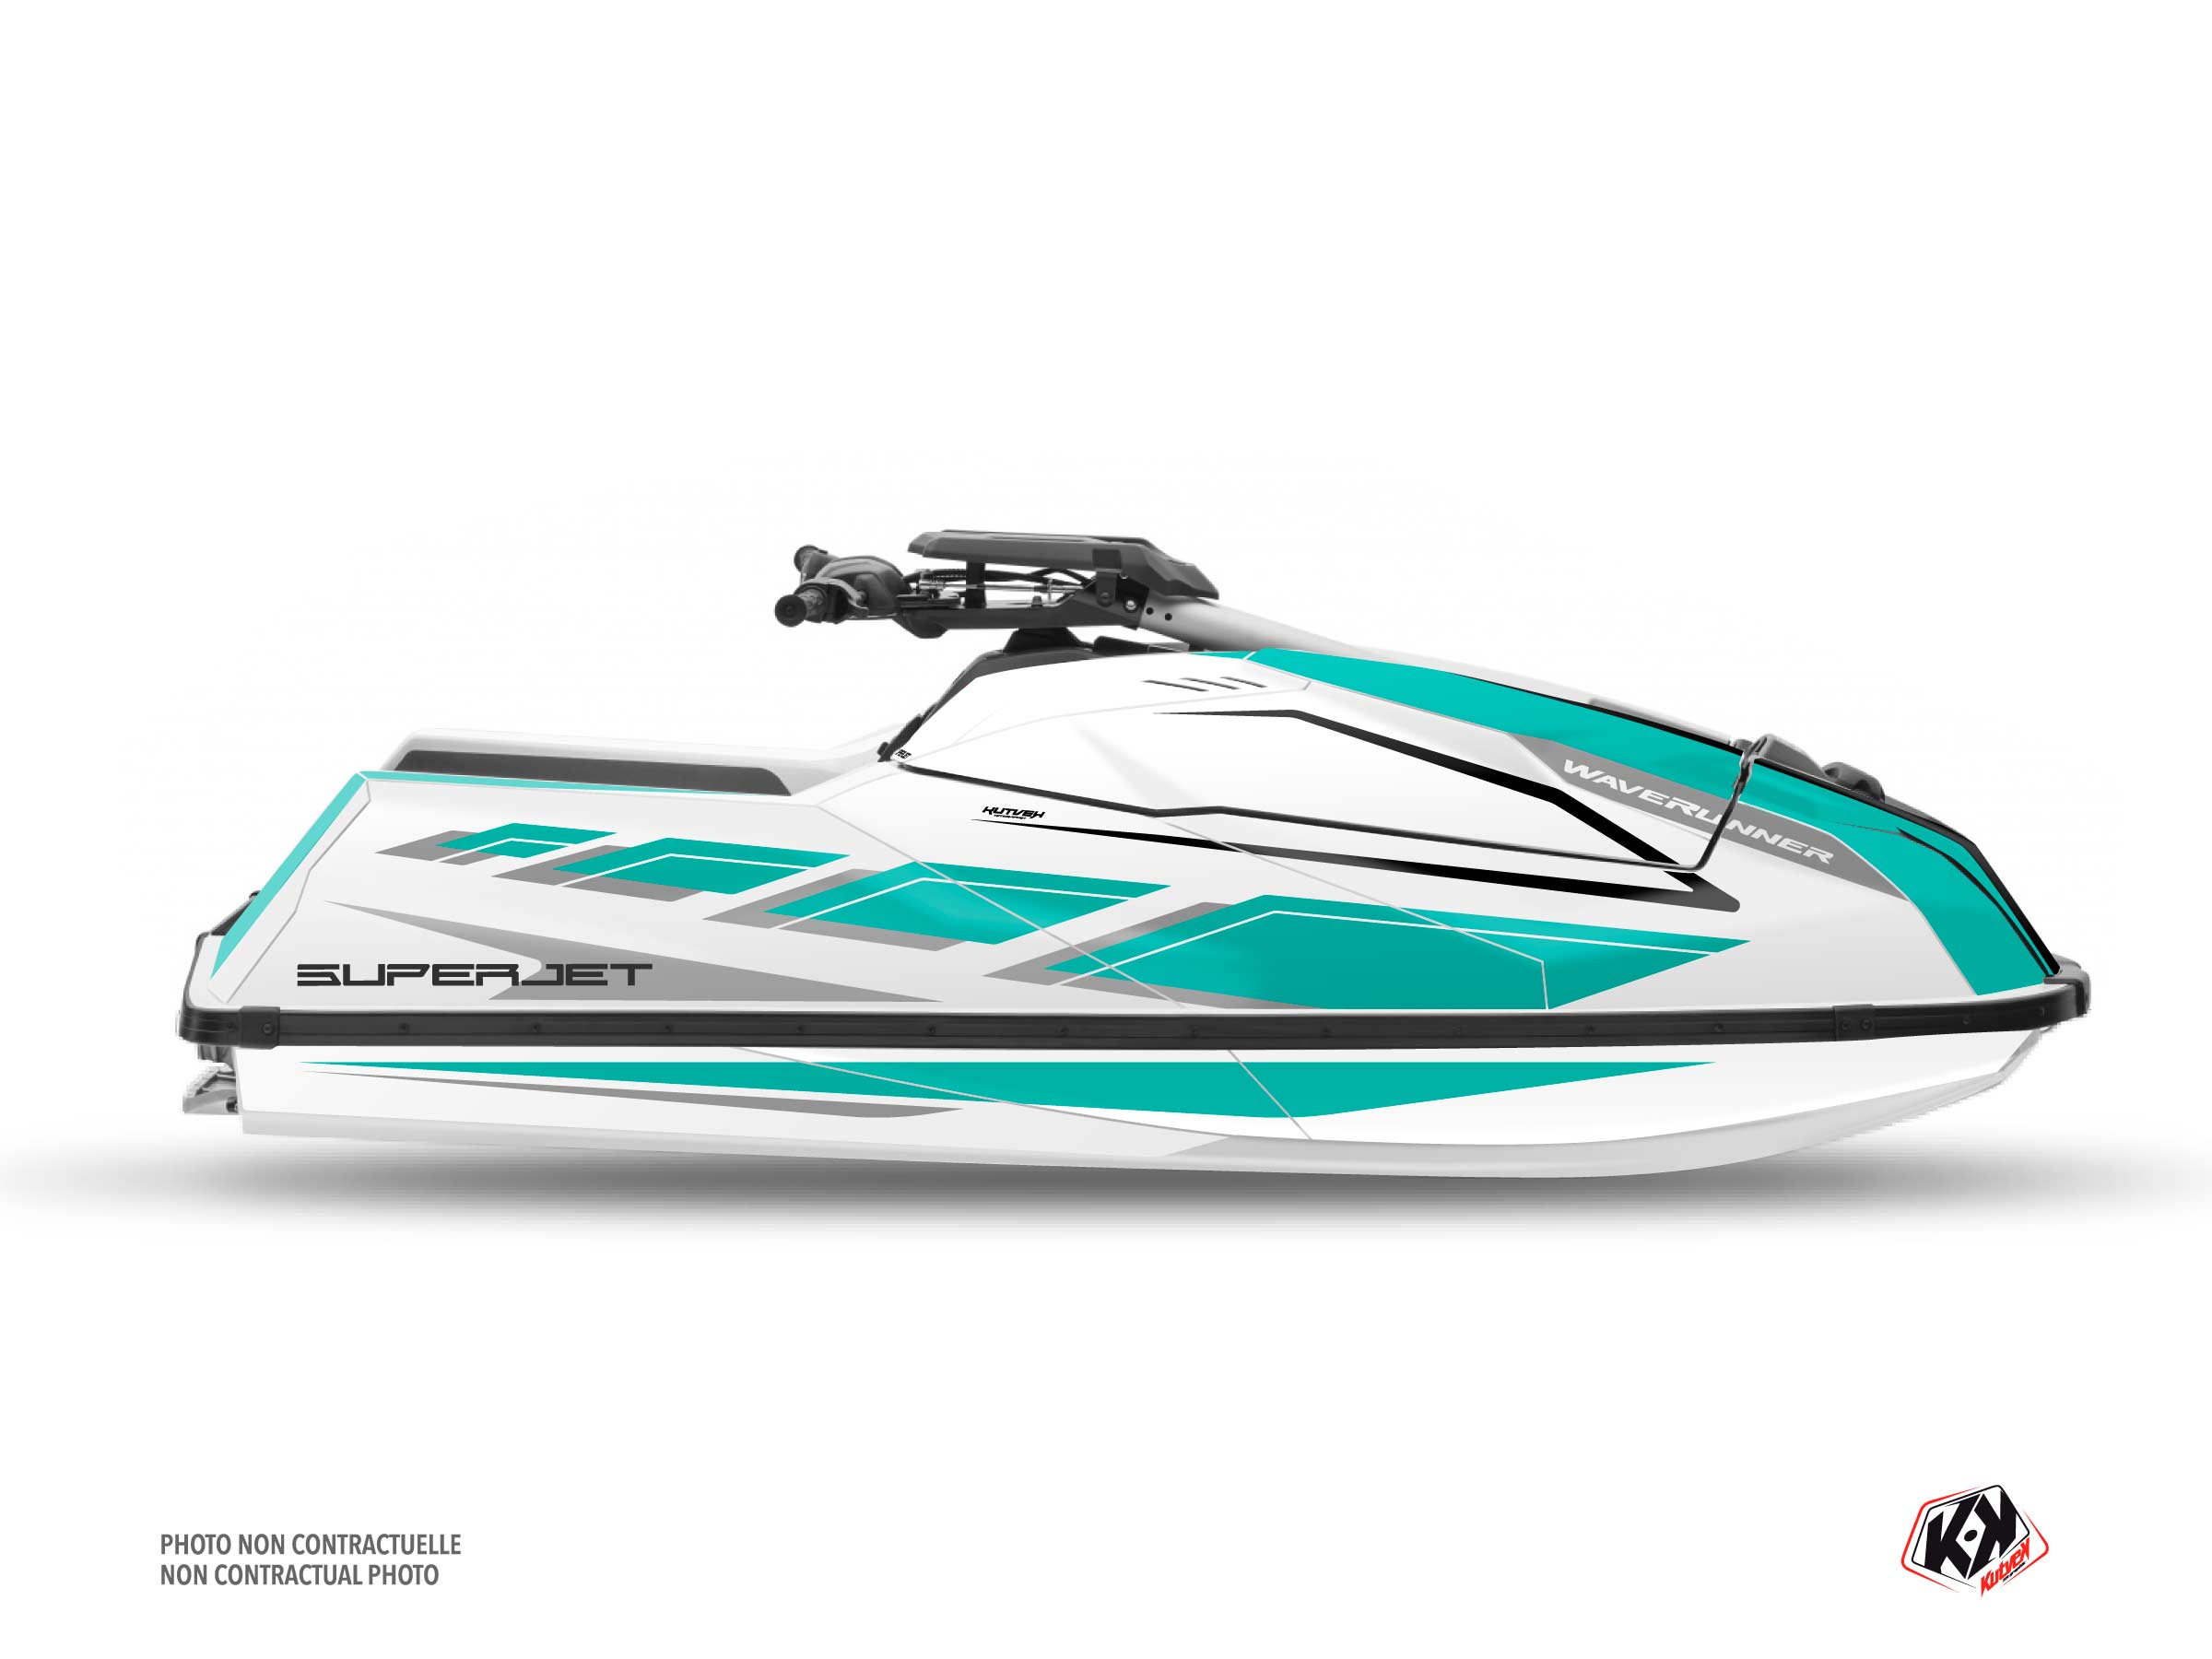 Kit Déco Jet-Ski PERF Yamaha Superjet Turquoise